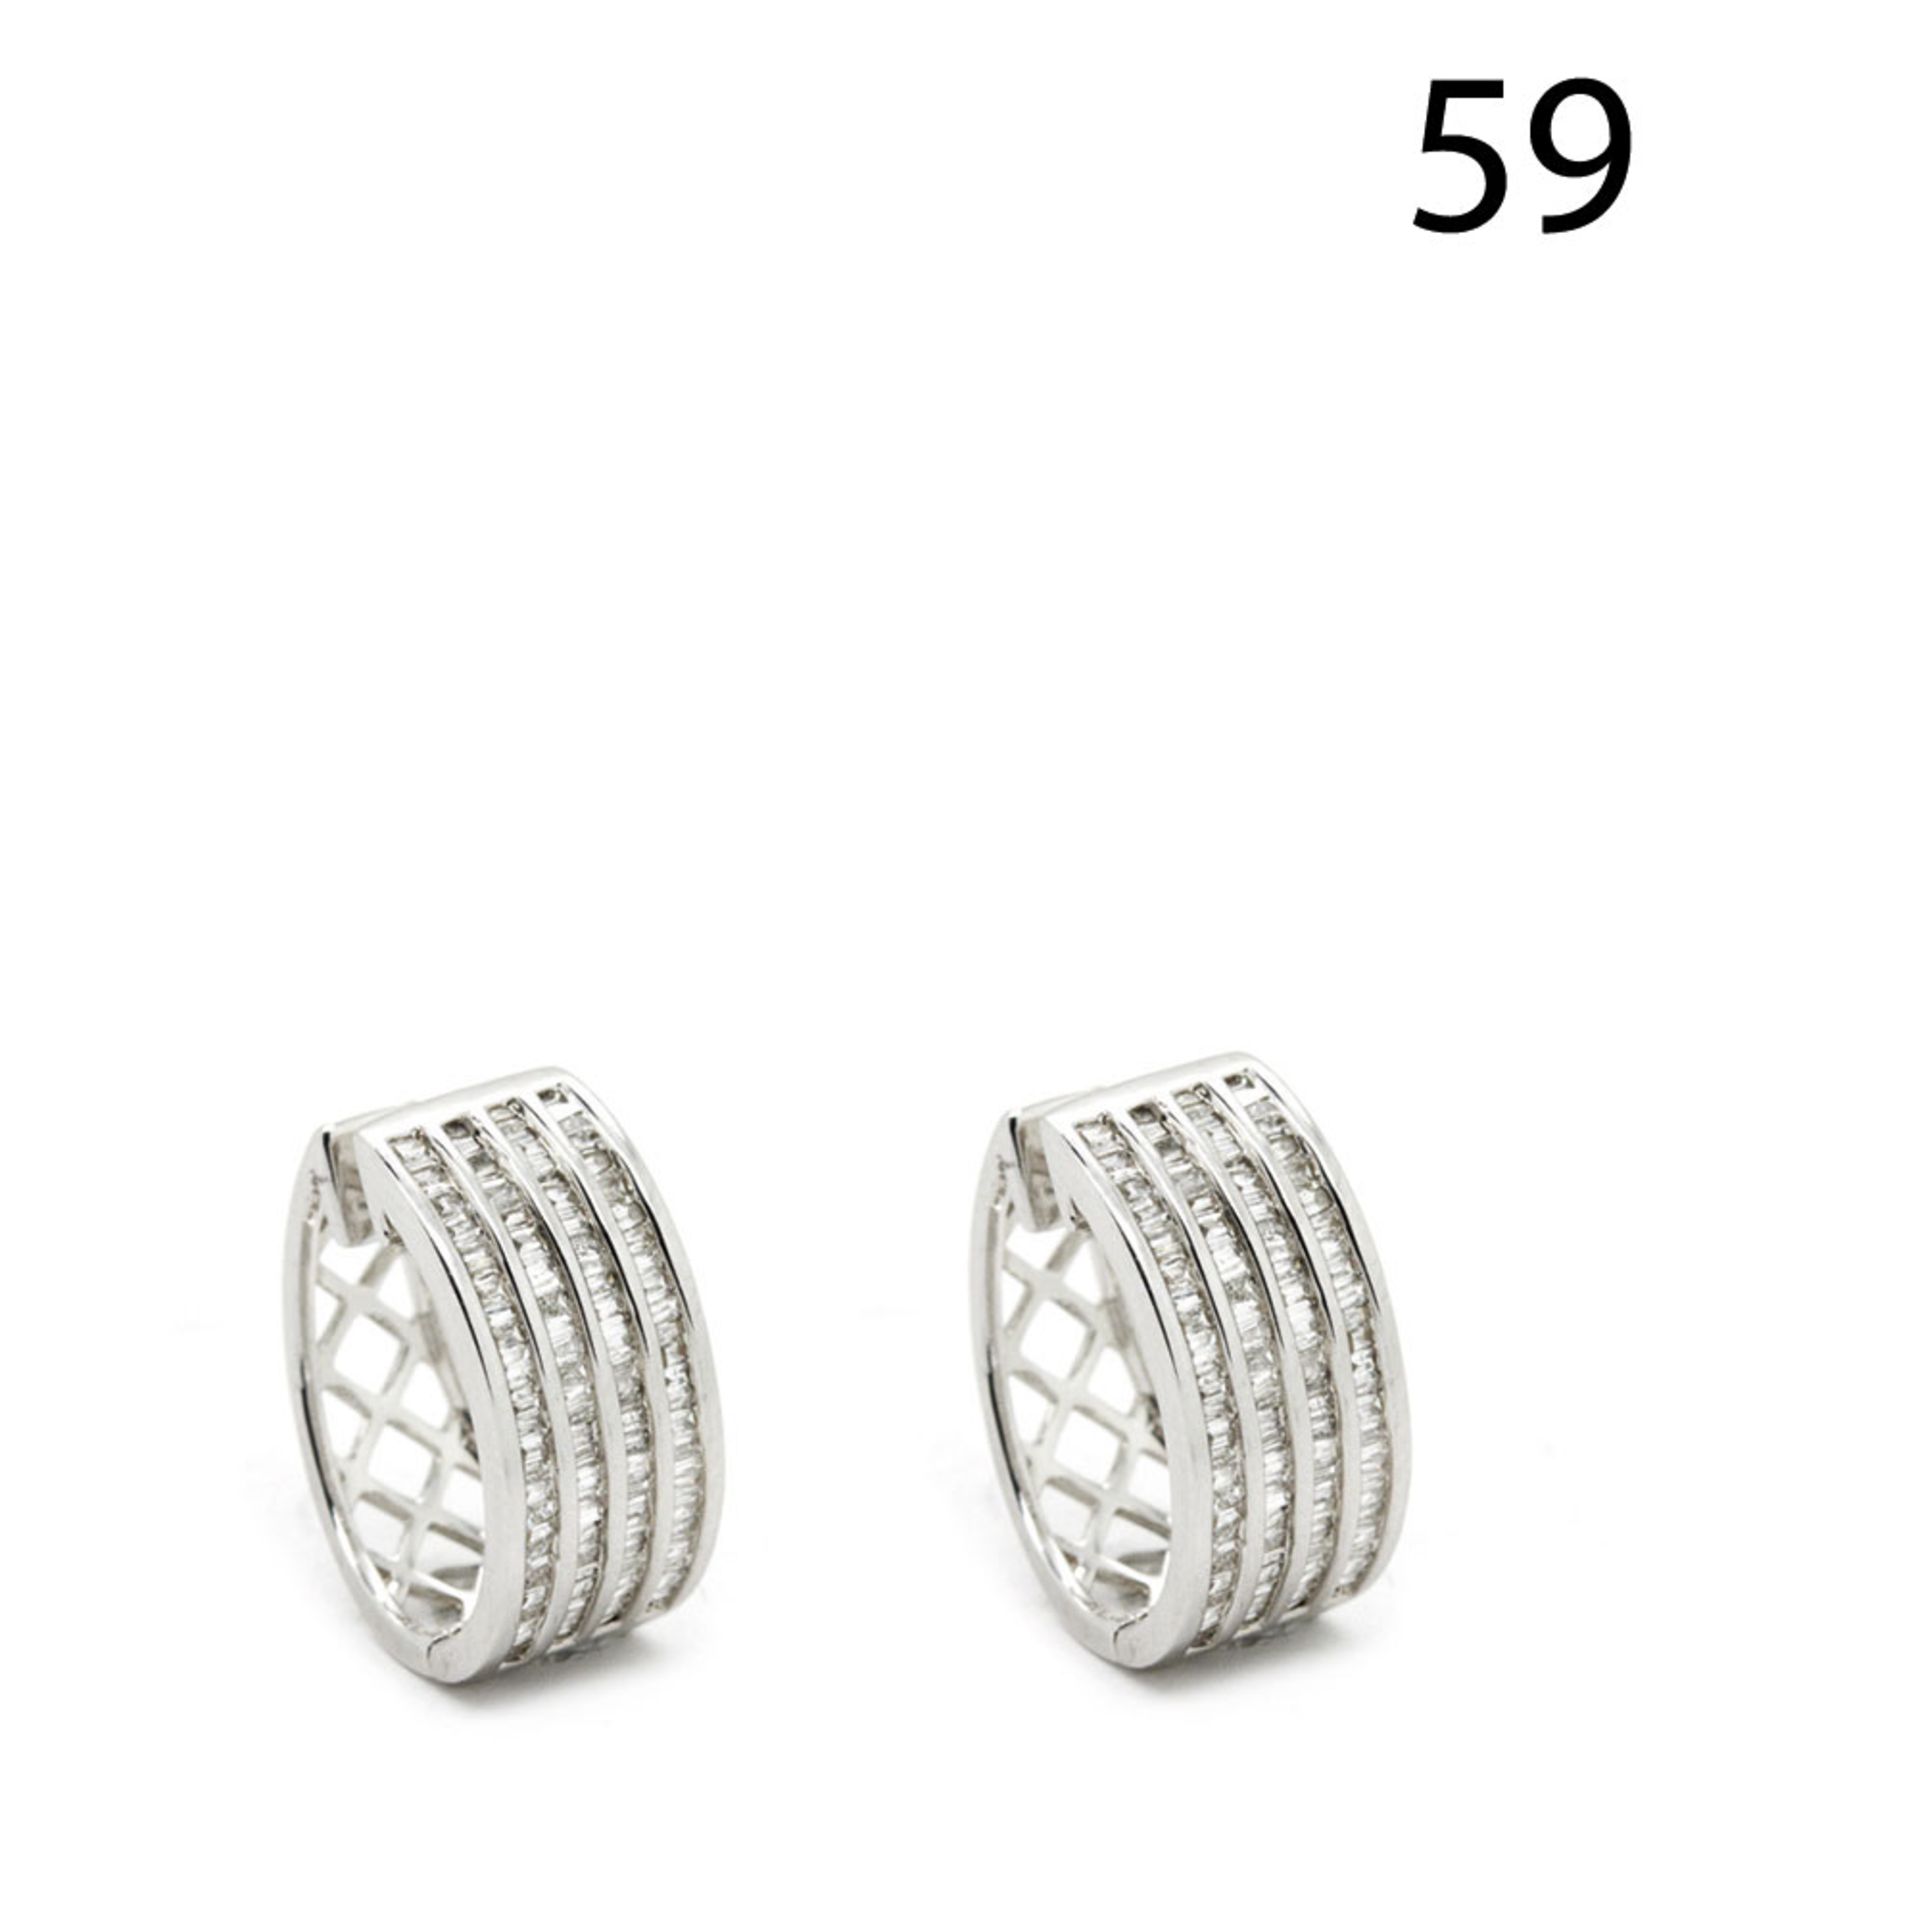 White gold and diamonds earrings - Pendientes media criolla en oro blanco con bandas de diamantes